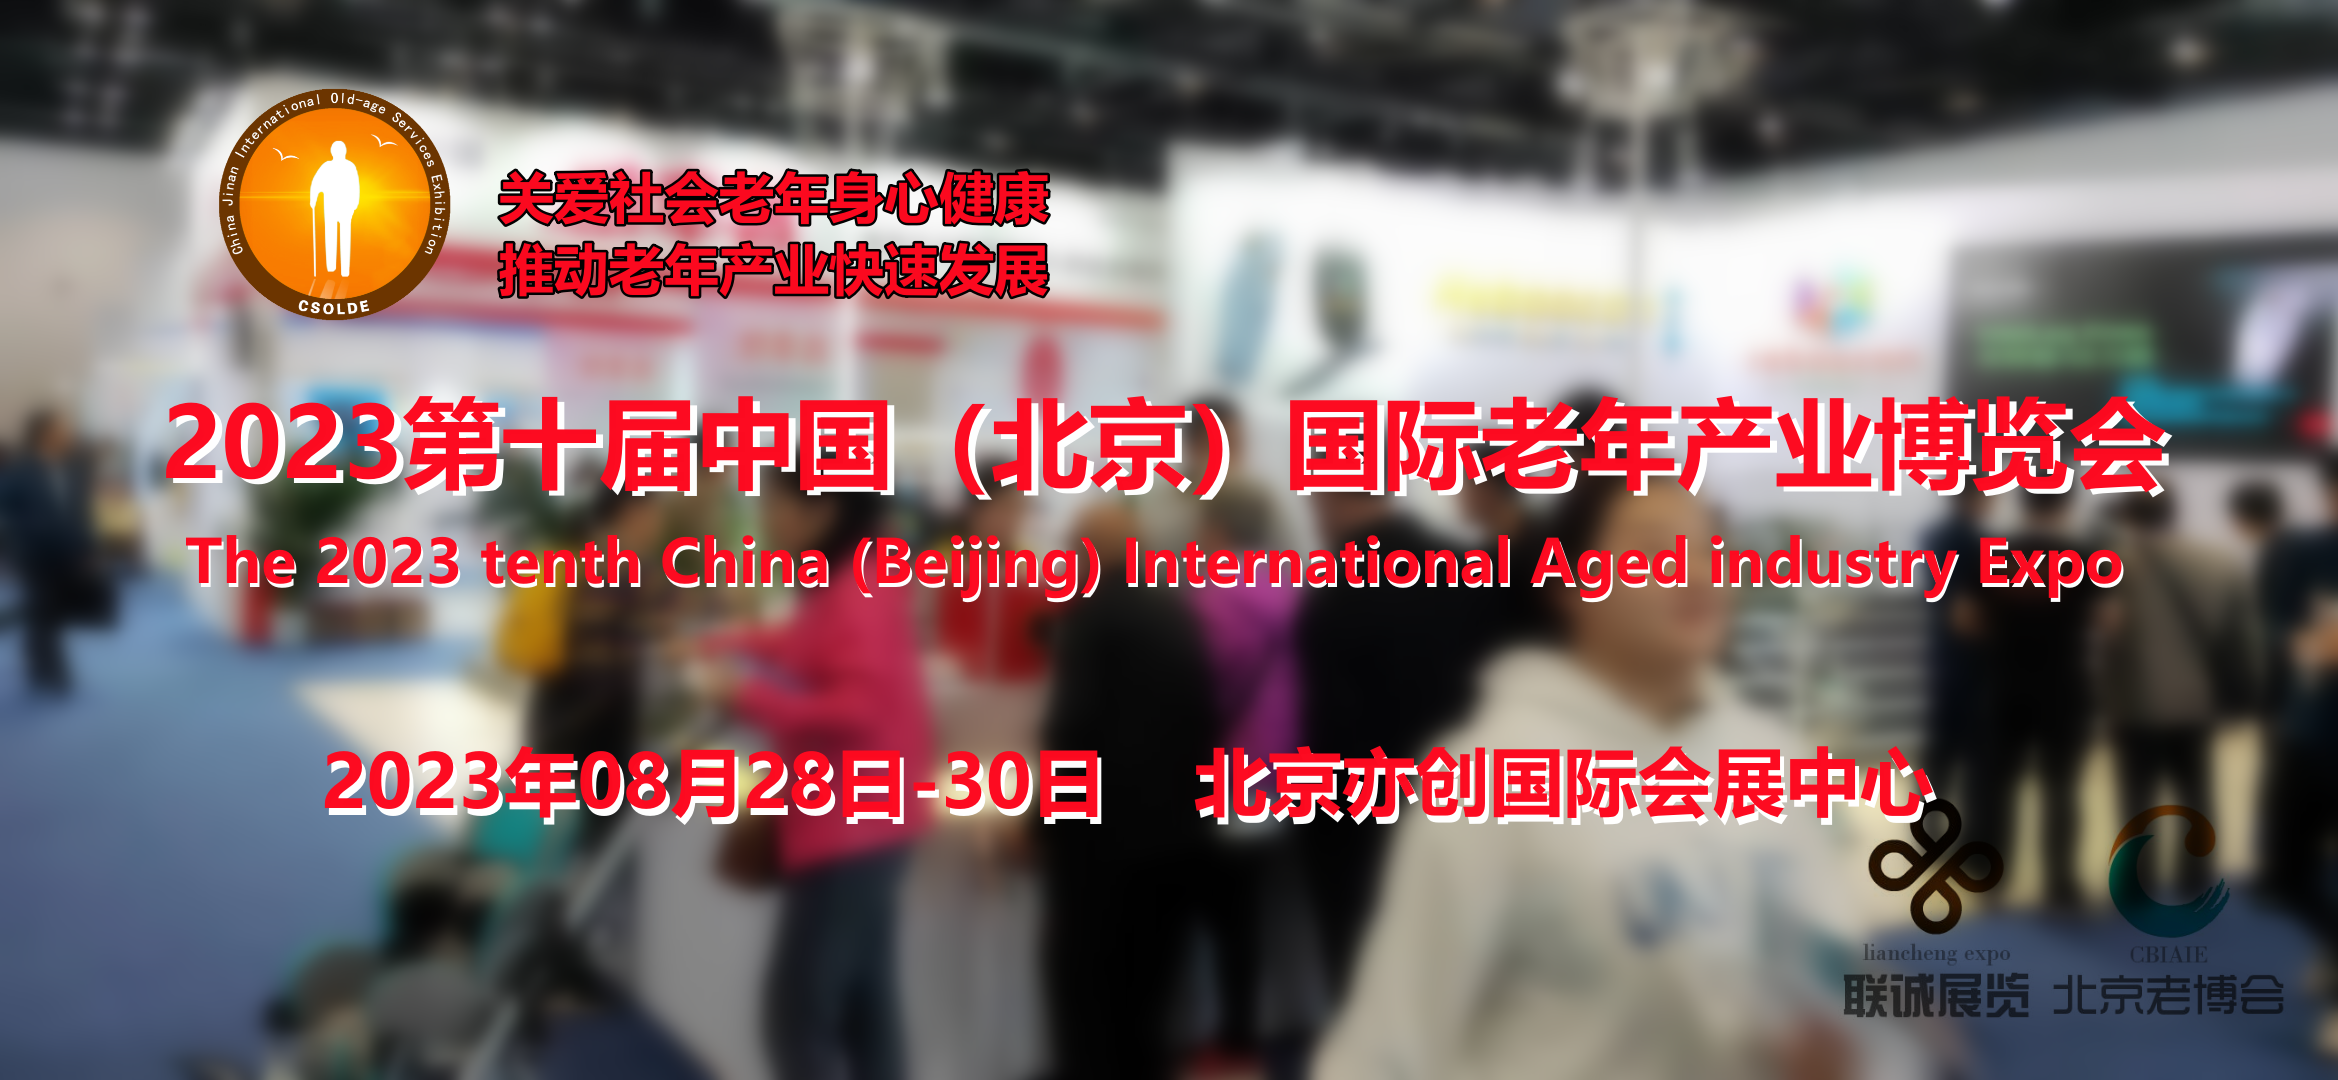 展望|2023第十届北京国际老年产业博览会